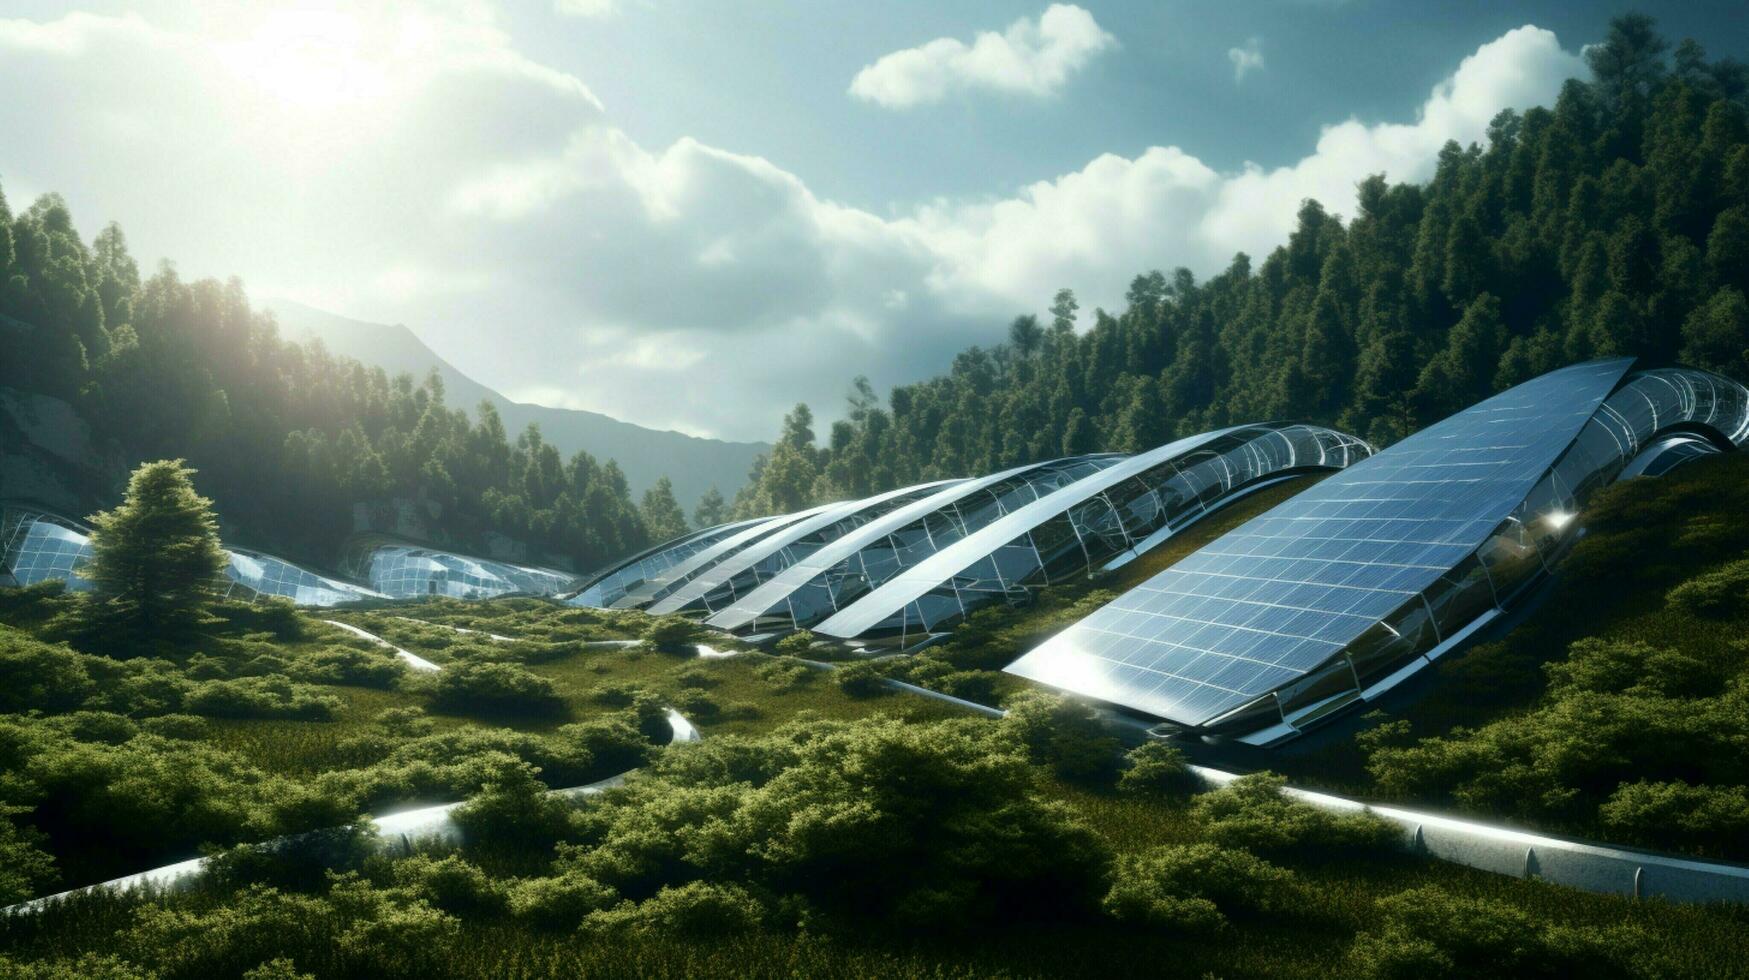 moderne solaire Puissance station génère durable électricité photo